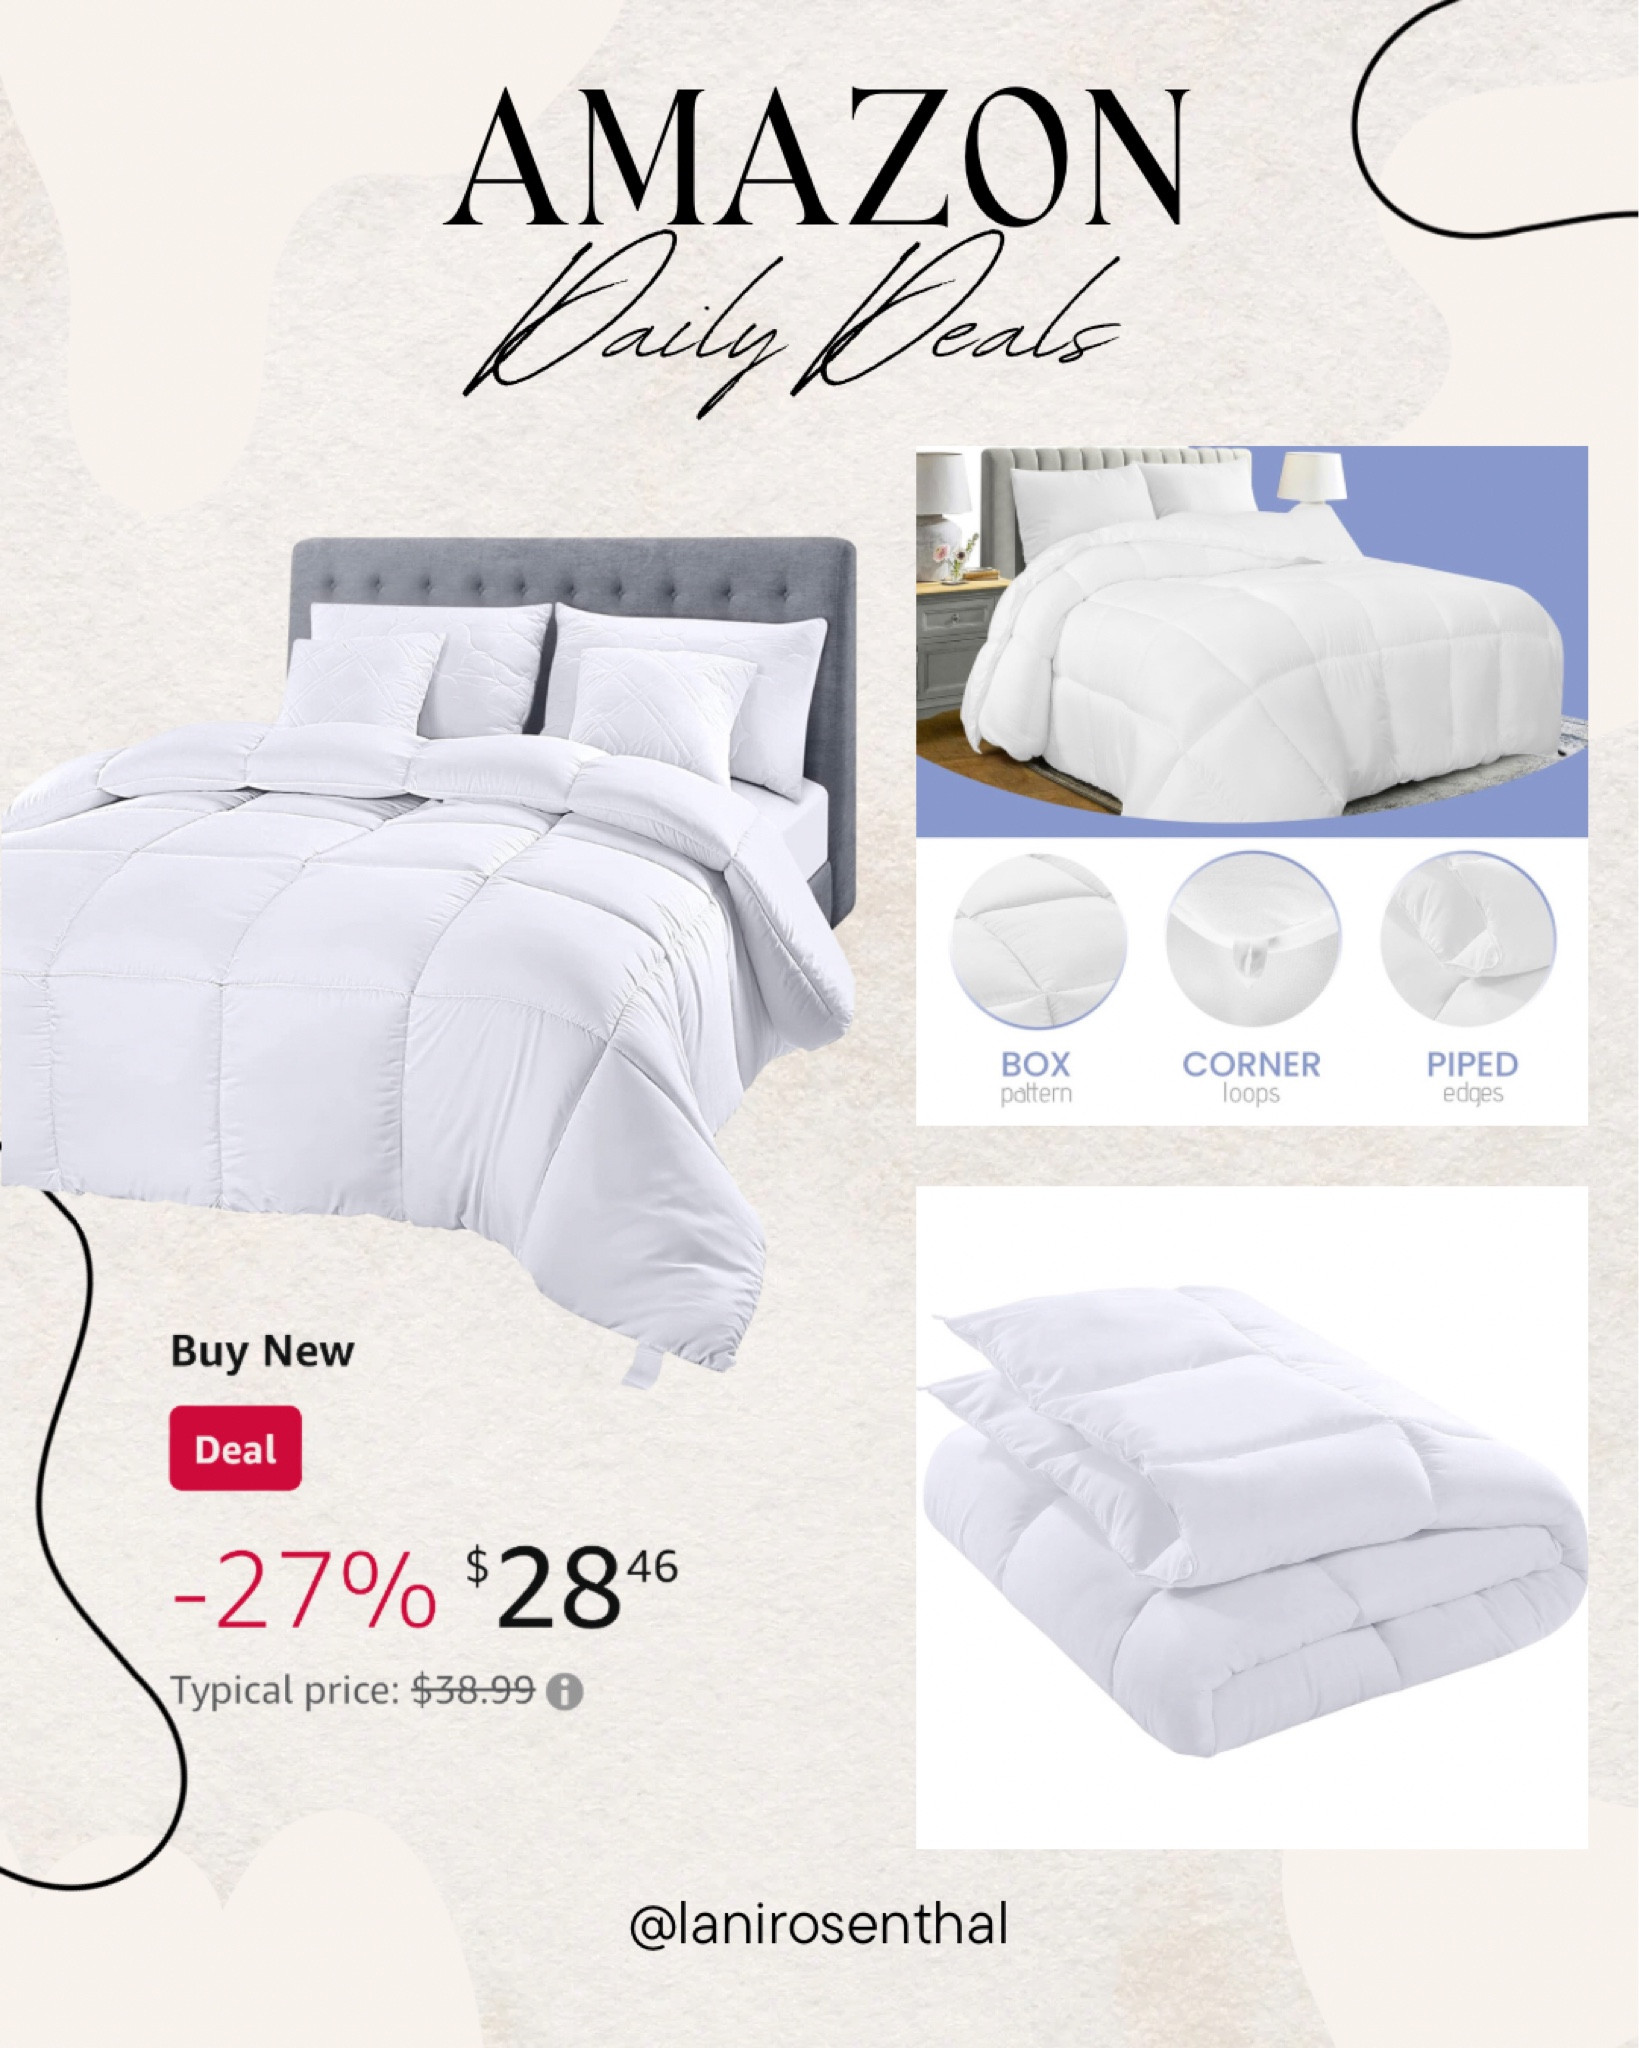 Comforter Duvet Insert Quilted with Corner Tabs Utopia Bedding